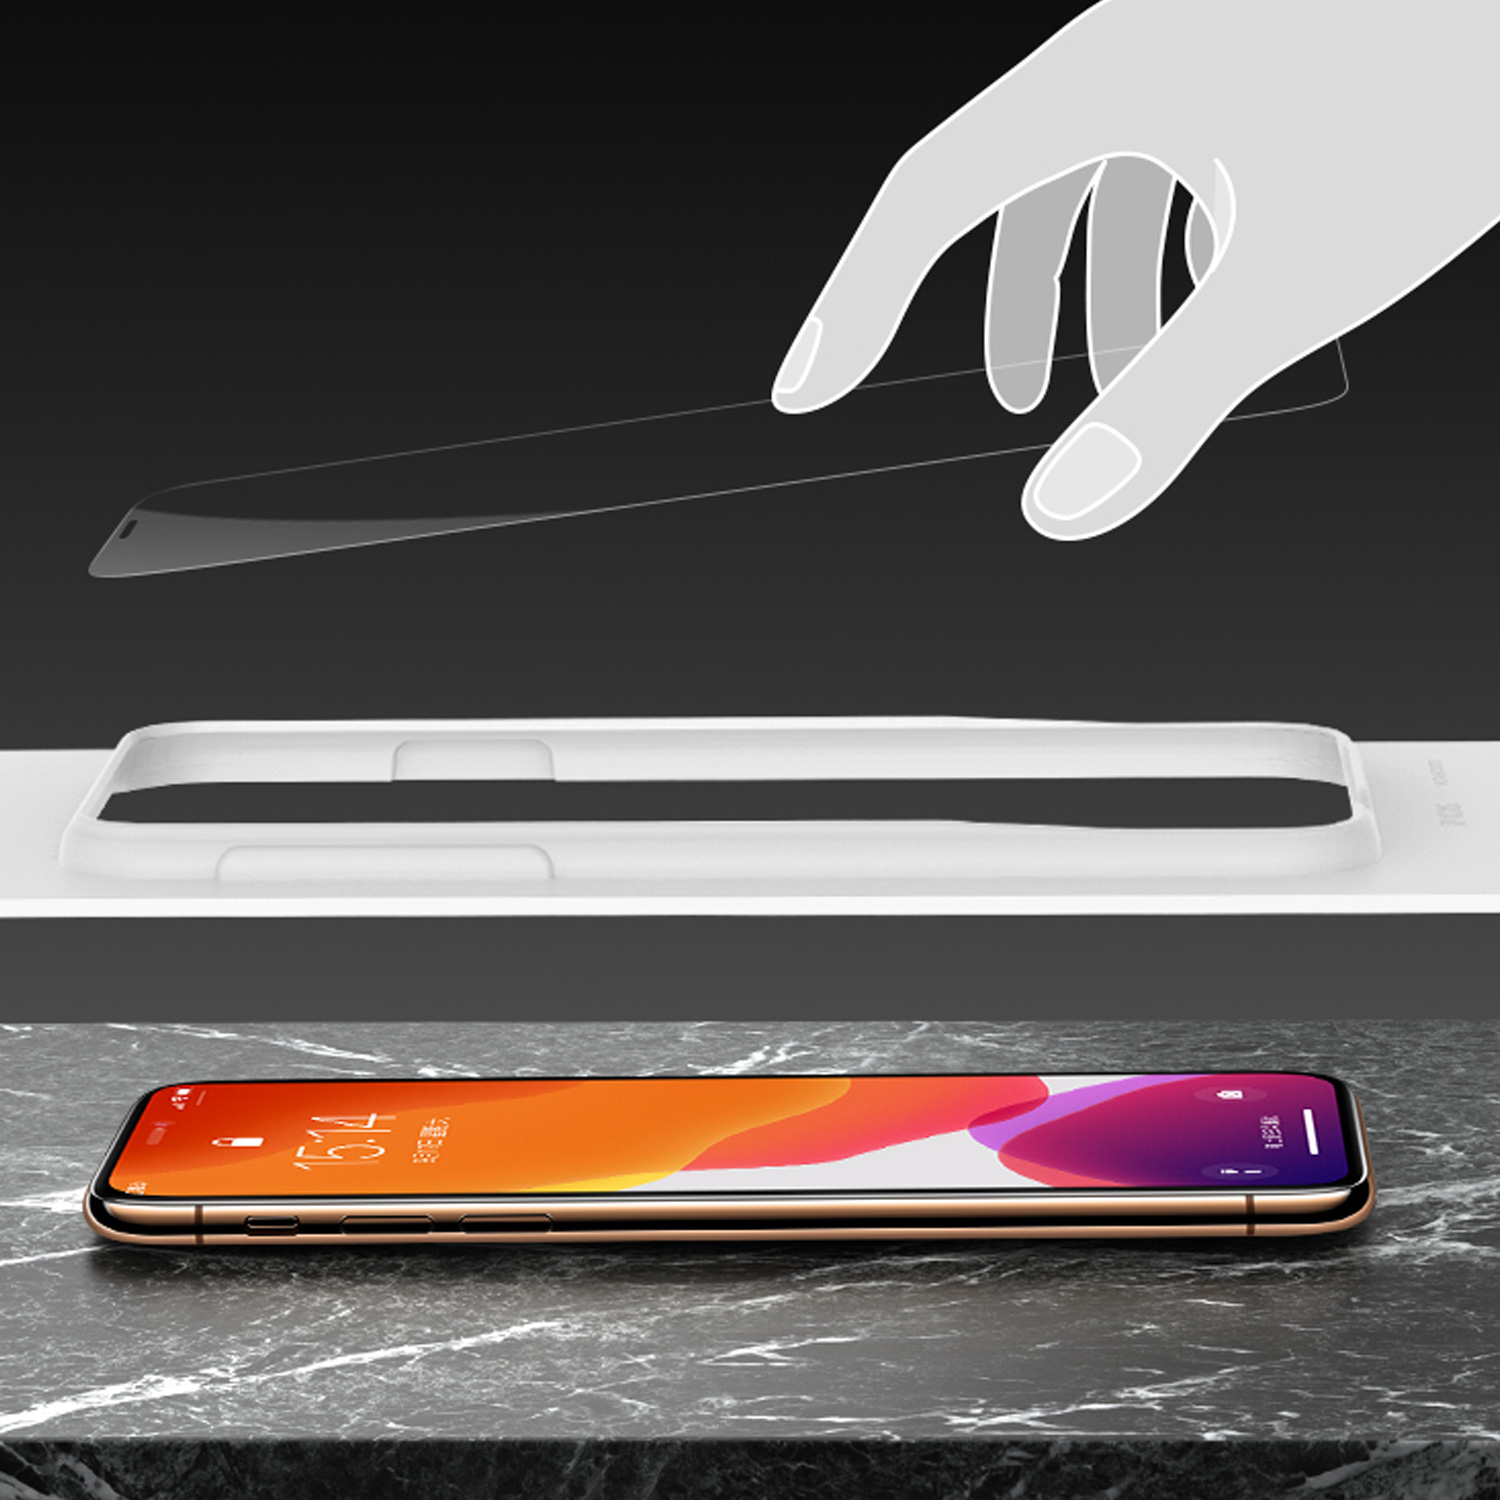 SZKŁO HARTOWANE BENKS MAGIC CKR+ Corning Gorilla Glass dla Apple iPhone 11 PRO MAX - Specyfikacja: Szkło BENKS CKR+ Apple iPhone 11 PRO MAX